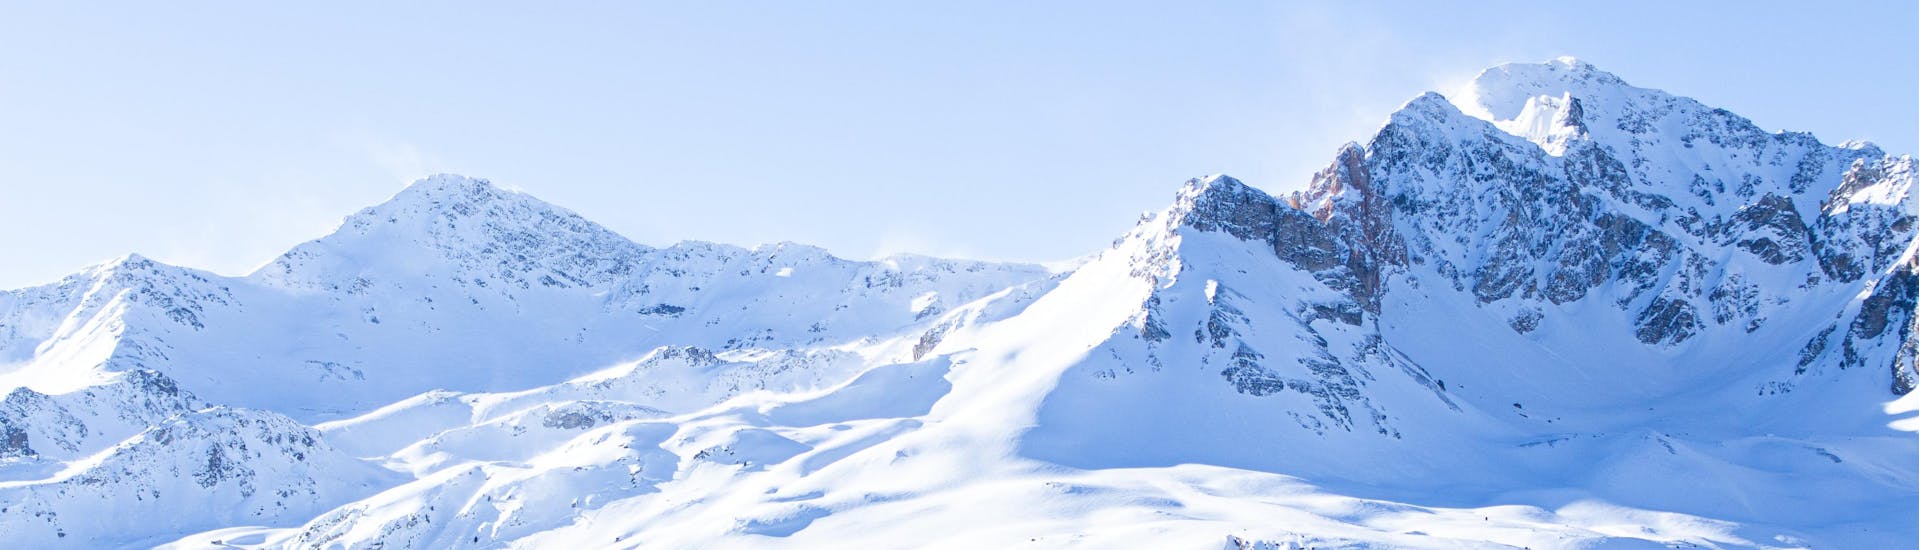 Une vue panoramique des montagnes enneigées entourant la station française de Valfréjus où les écoles de ski locales proposent un large choix de cours de ski.